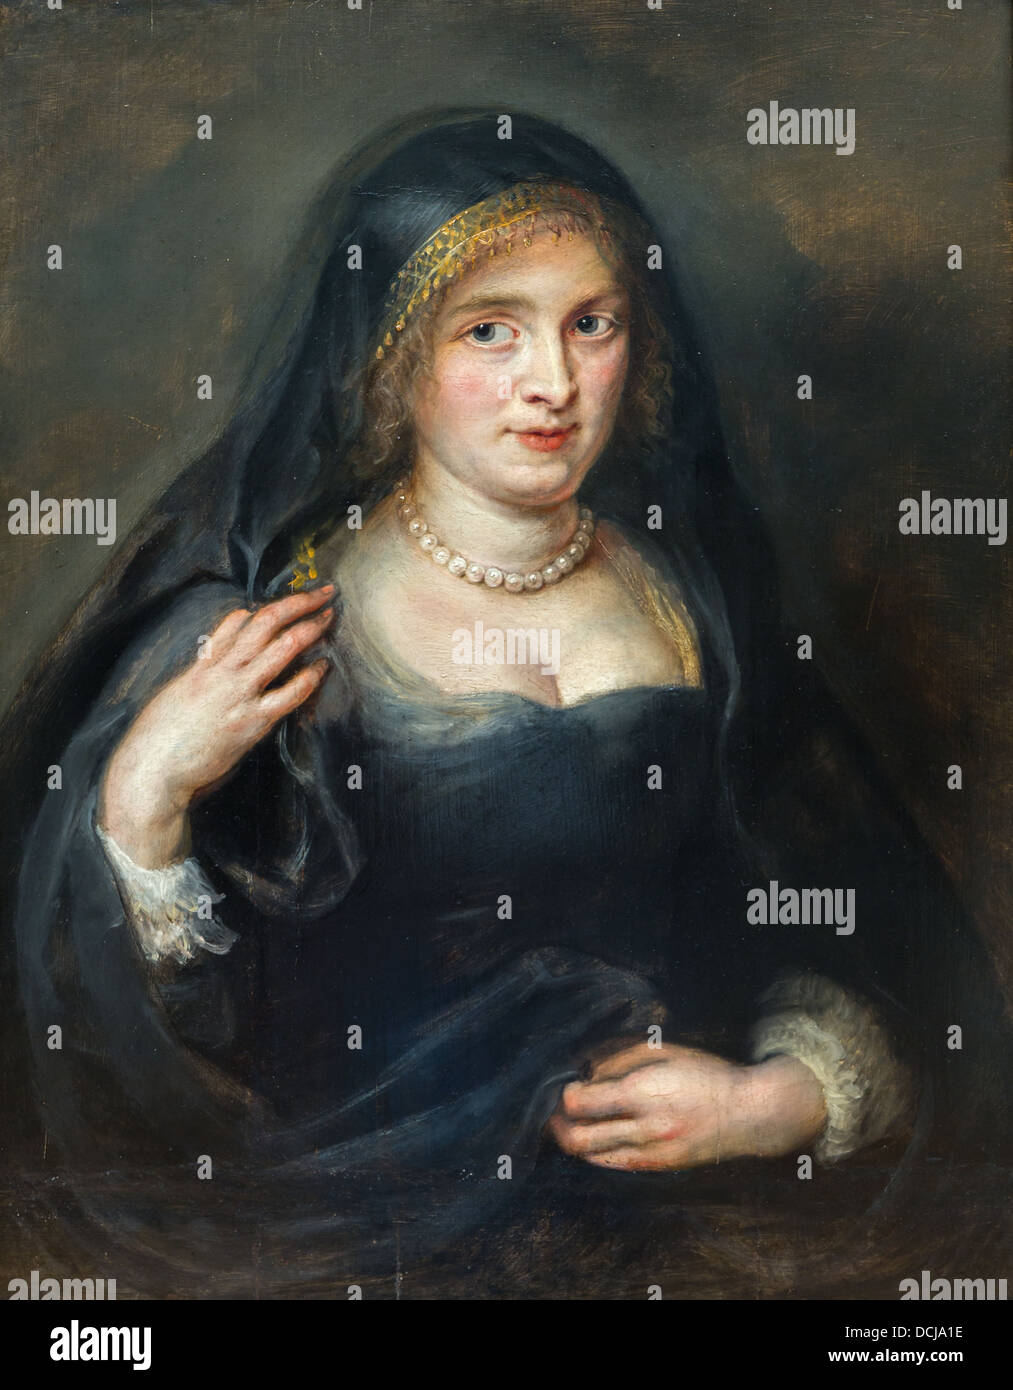 Siglo 17 - Retrato de una mujer, probablemente Susanna Lunden - Pedro Pablo Rubens (1625) Óleo sobre lienzo Foto de stock